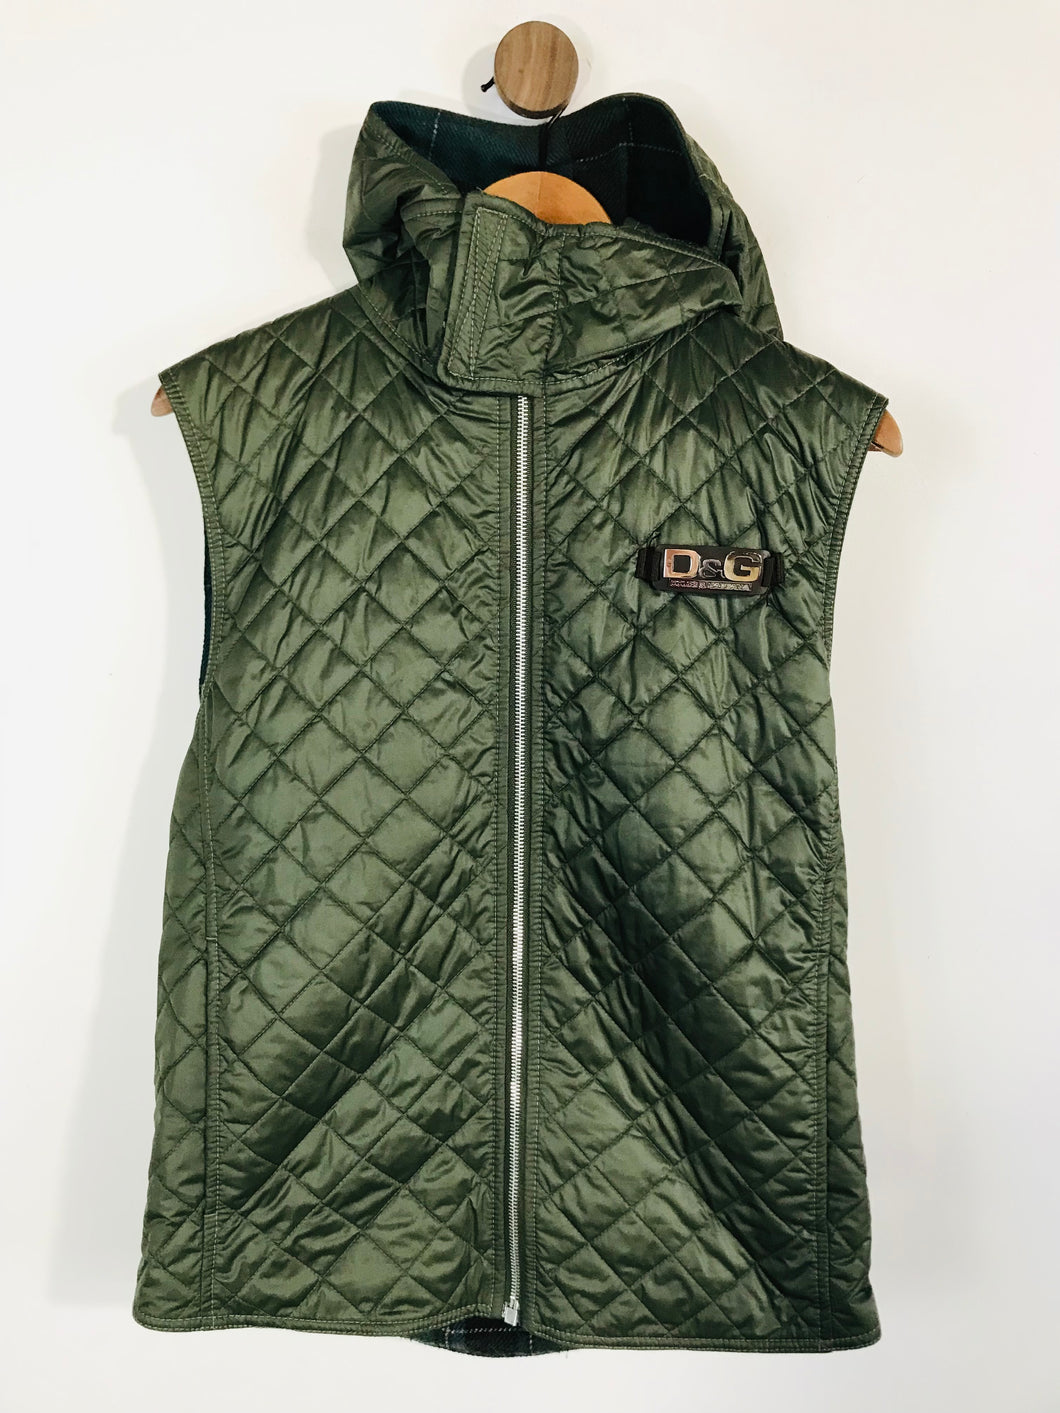 Dolce & Gabbana Men's Vest Zip Gilet Jacket | EUR44 | Green